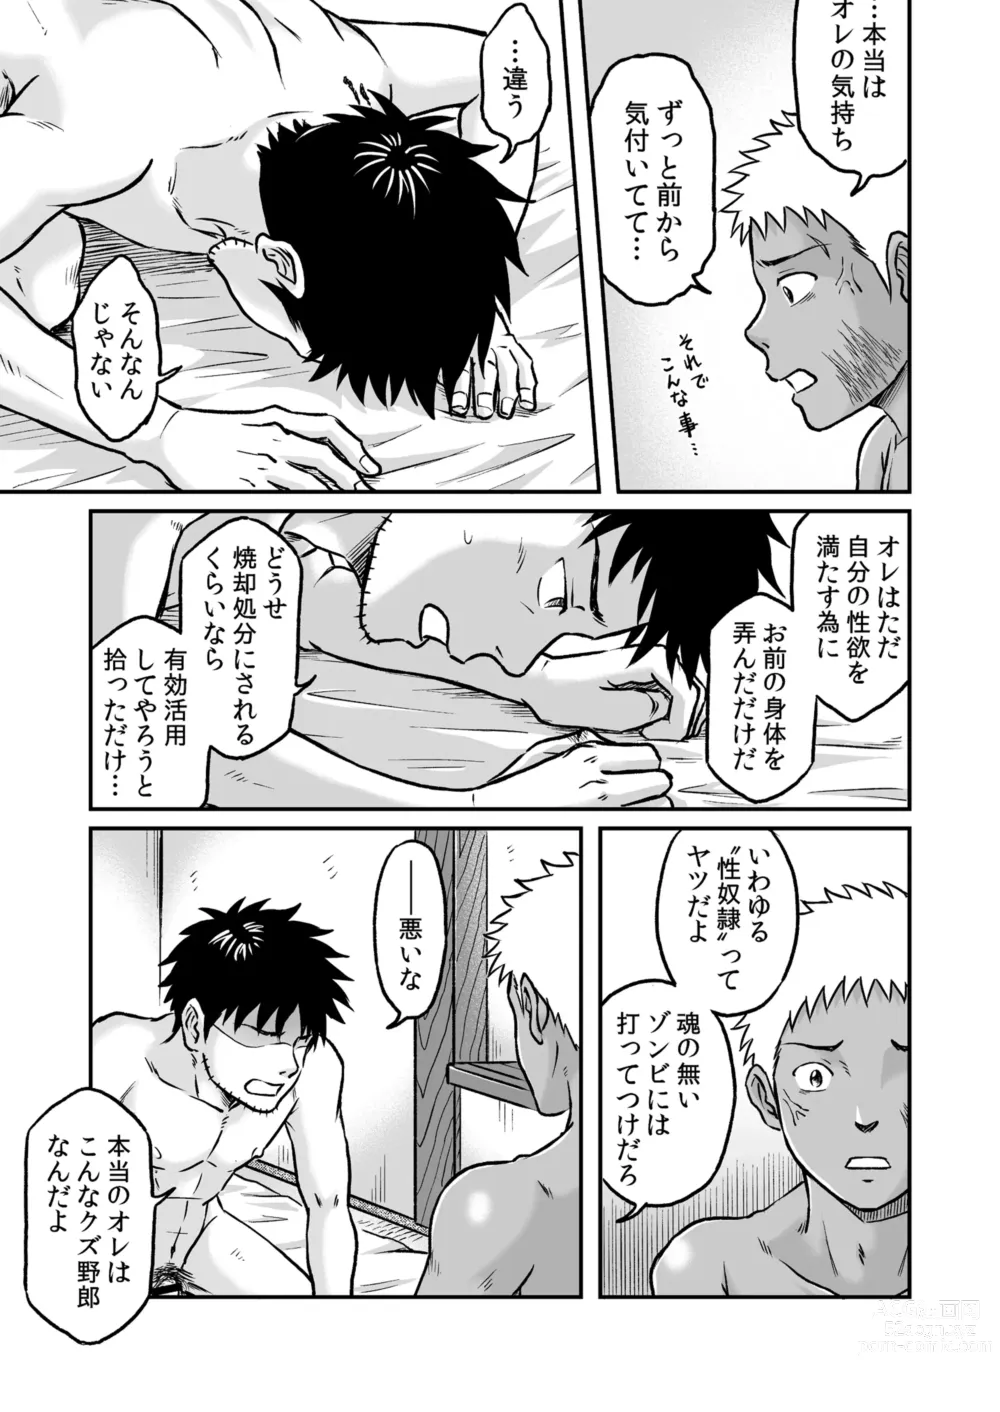 Page 42 of doujinshi Bokura wa Minna Ikiteiru 3